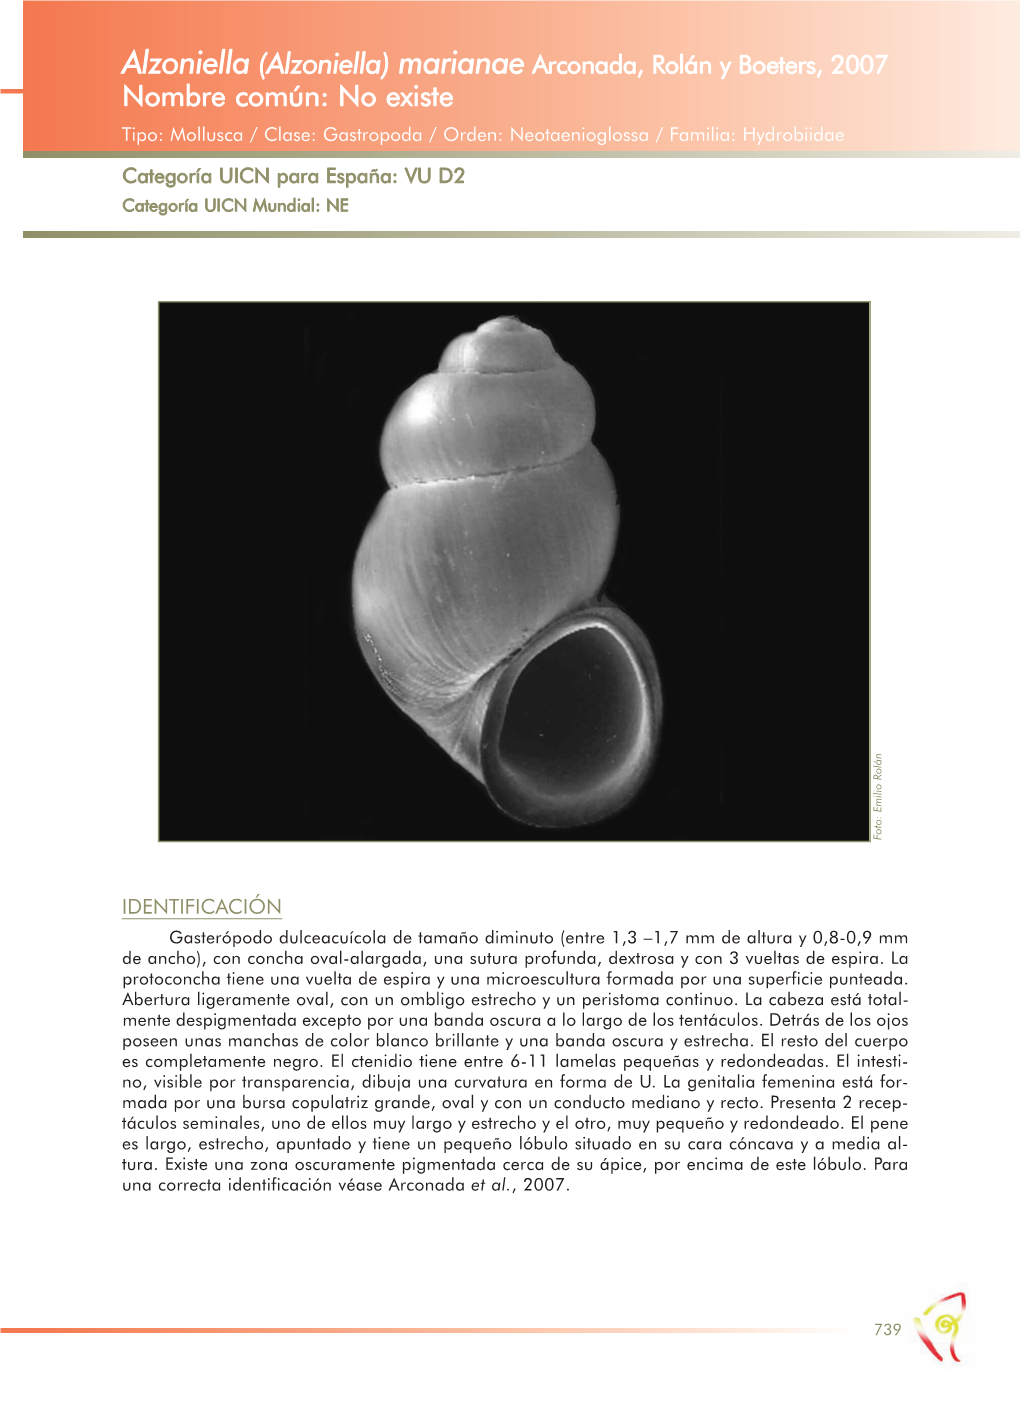 (Alzoniella) Marianae Arconada, Rolán Y Boeters, 2007 Nombre Común: No Existe Tipo: Mollusca / Clase: Gastropoda / Orden: Neotaenioglossa / Familia: Hydrobiidae